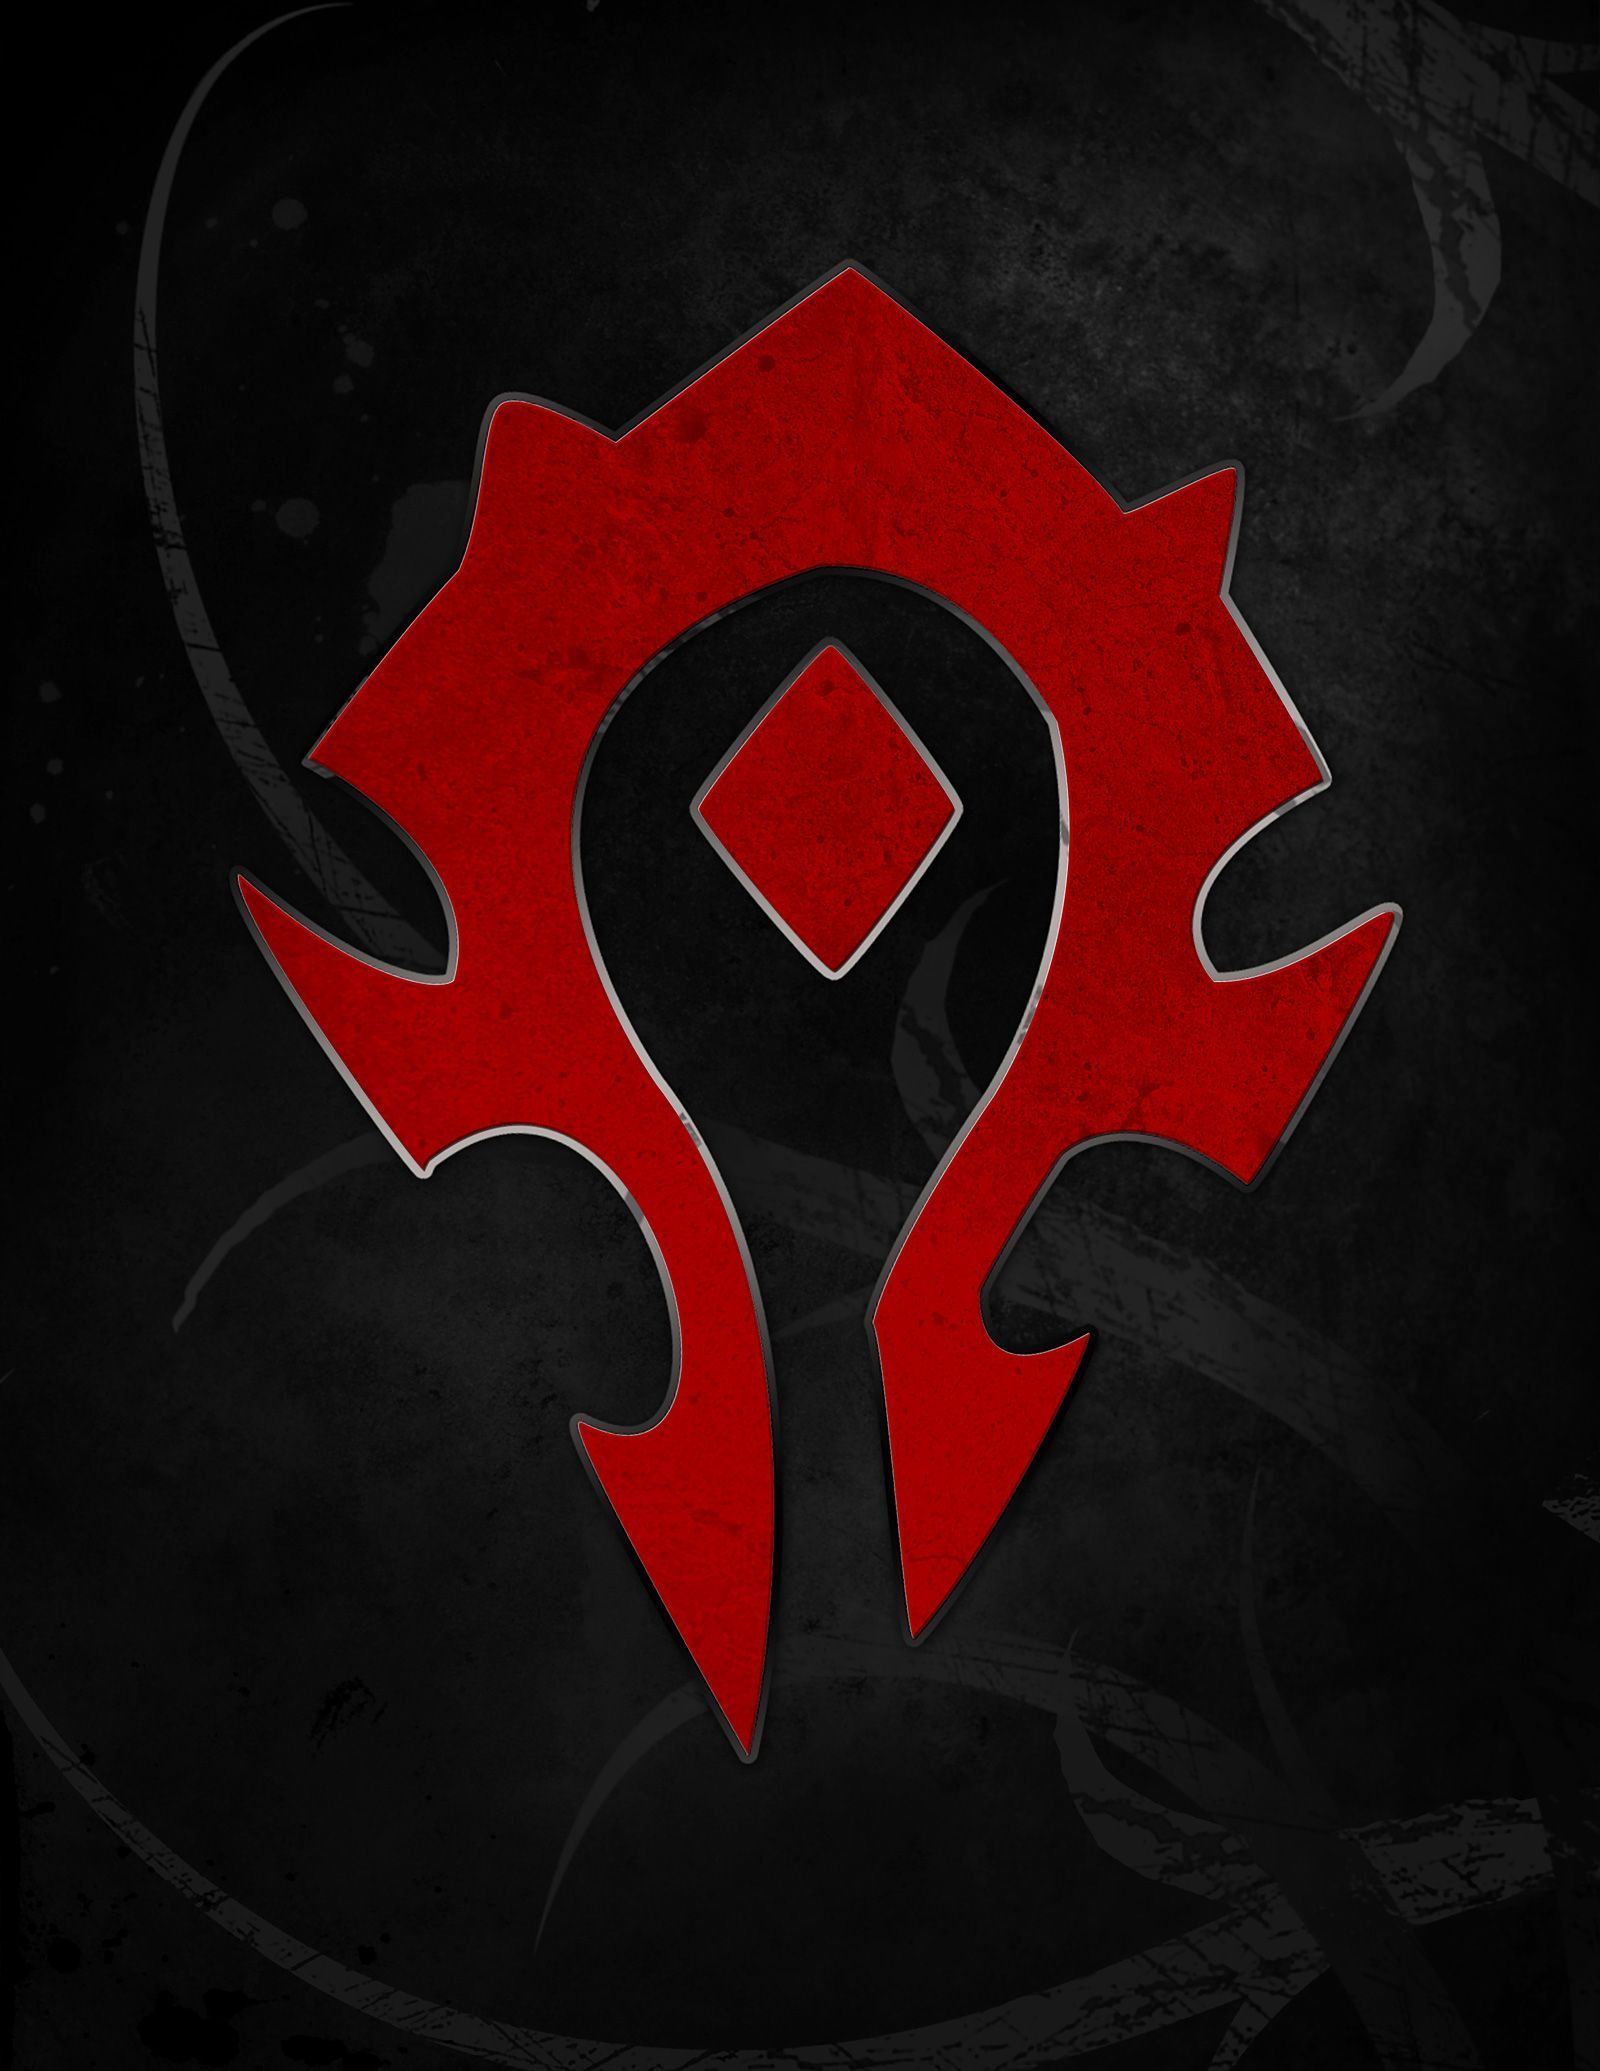 World of Warcraft: Horde Symbol?